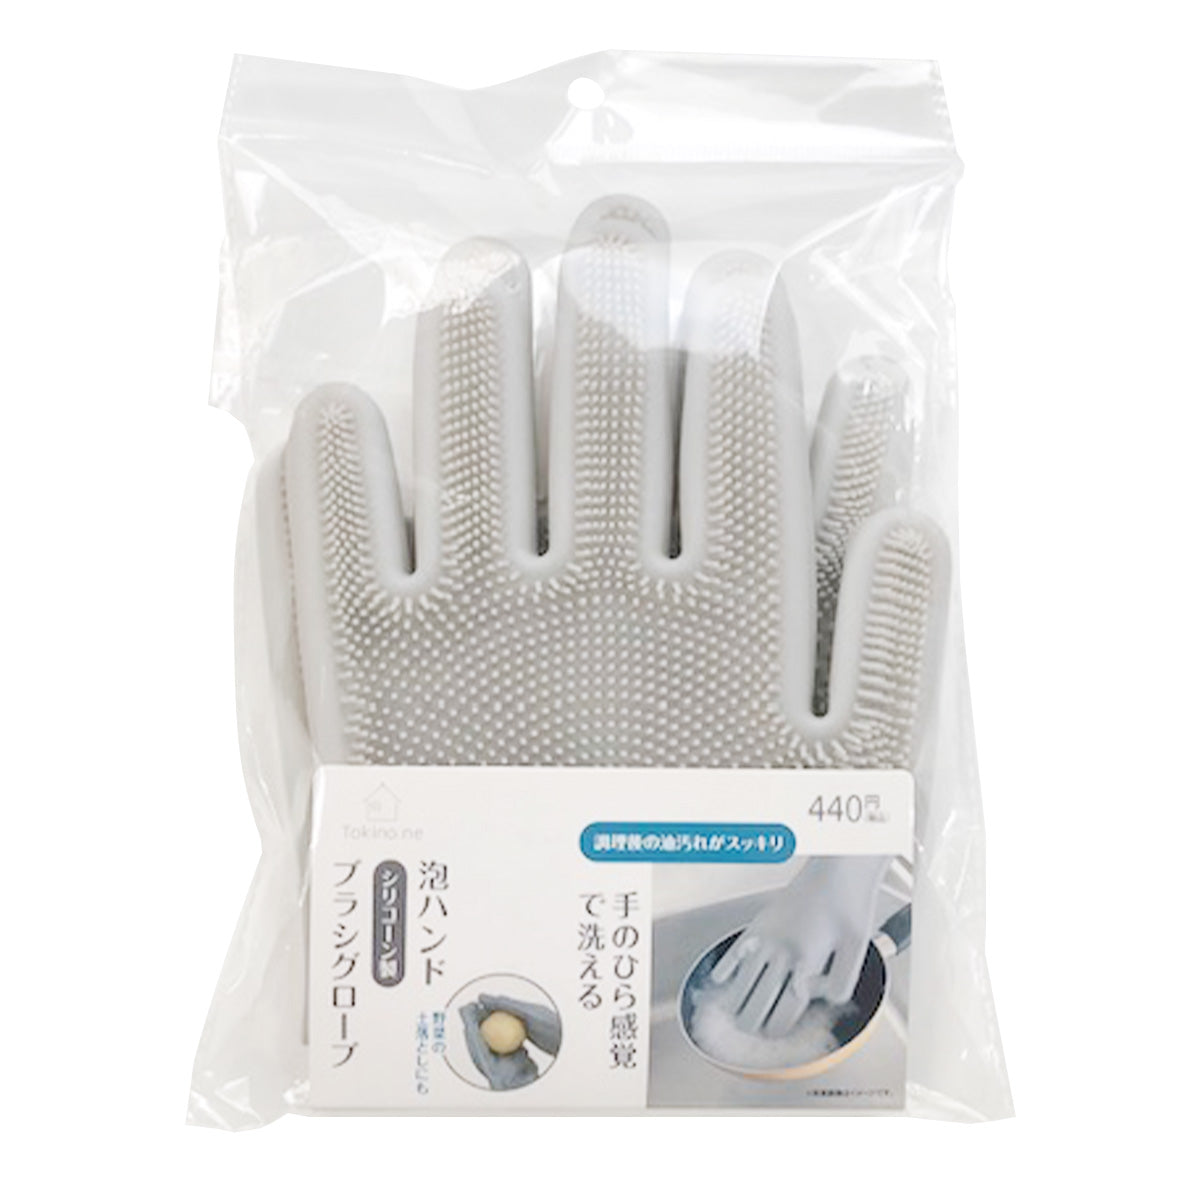 【在庫限り】大掃除 ブラシ手袋 シリコン製 Tokinone PB.泡ハンド シリコーン製ブラシグローブ 055670